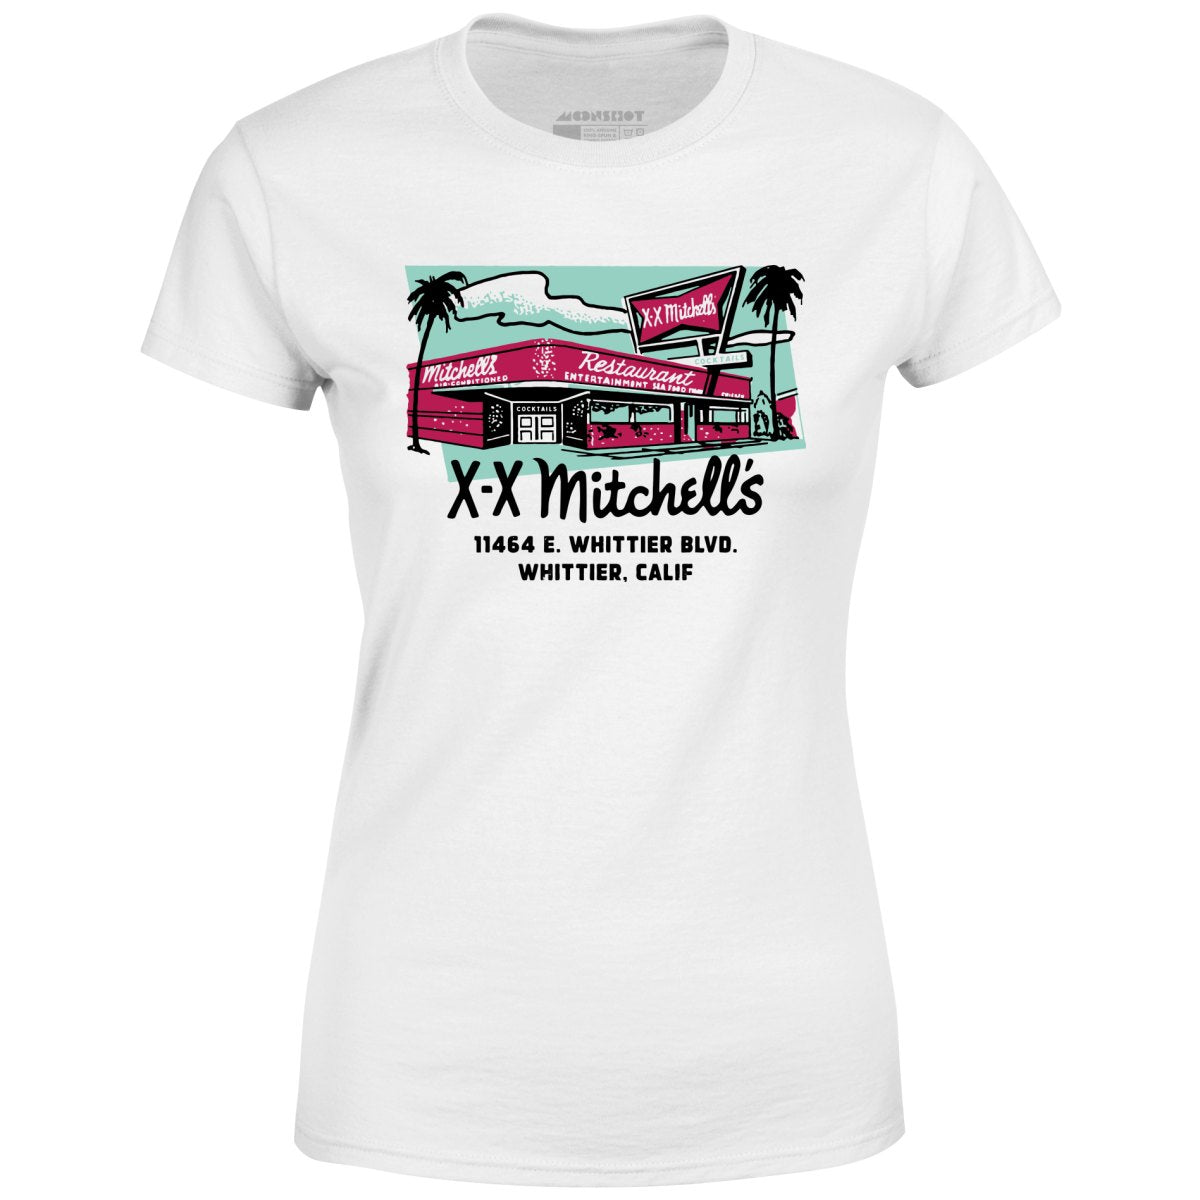 X-X Mitchell's - Whittier, CA - Vintage Restaurant - Women's T-Shirt